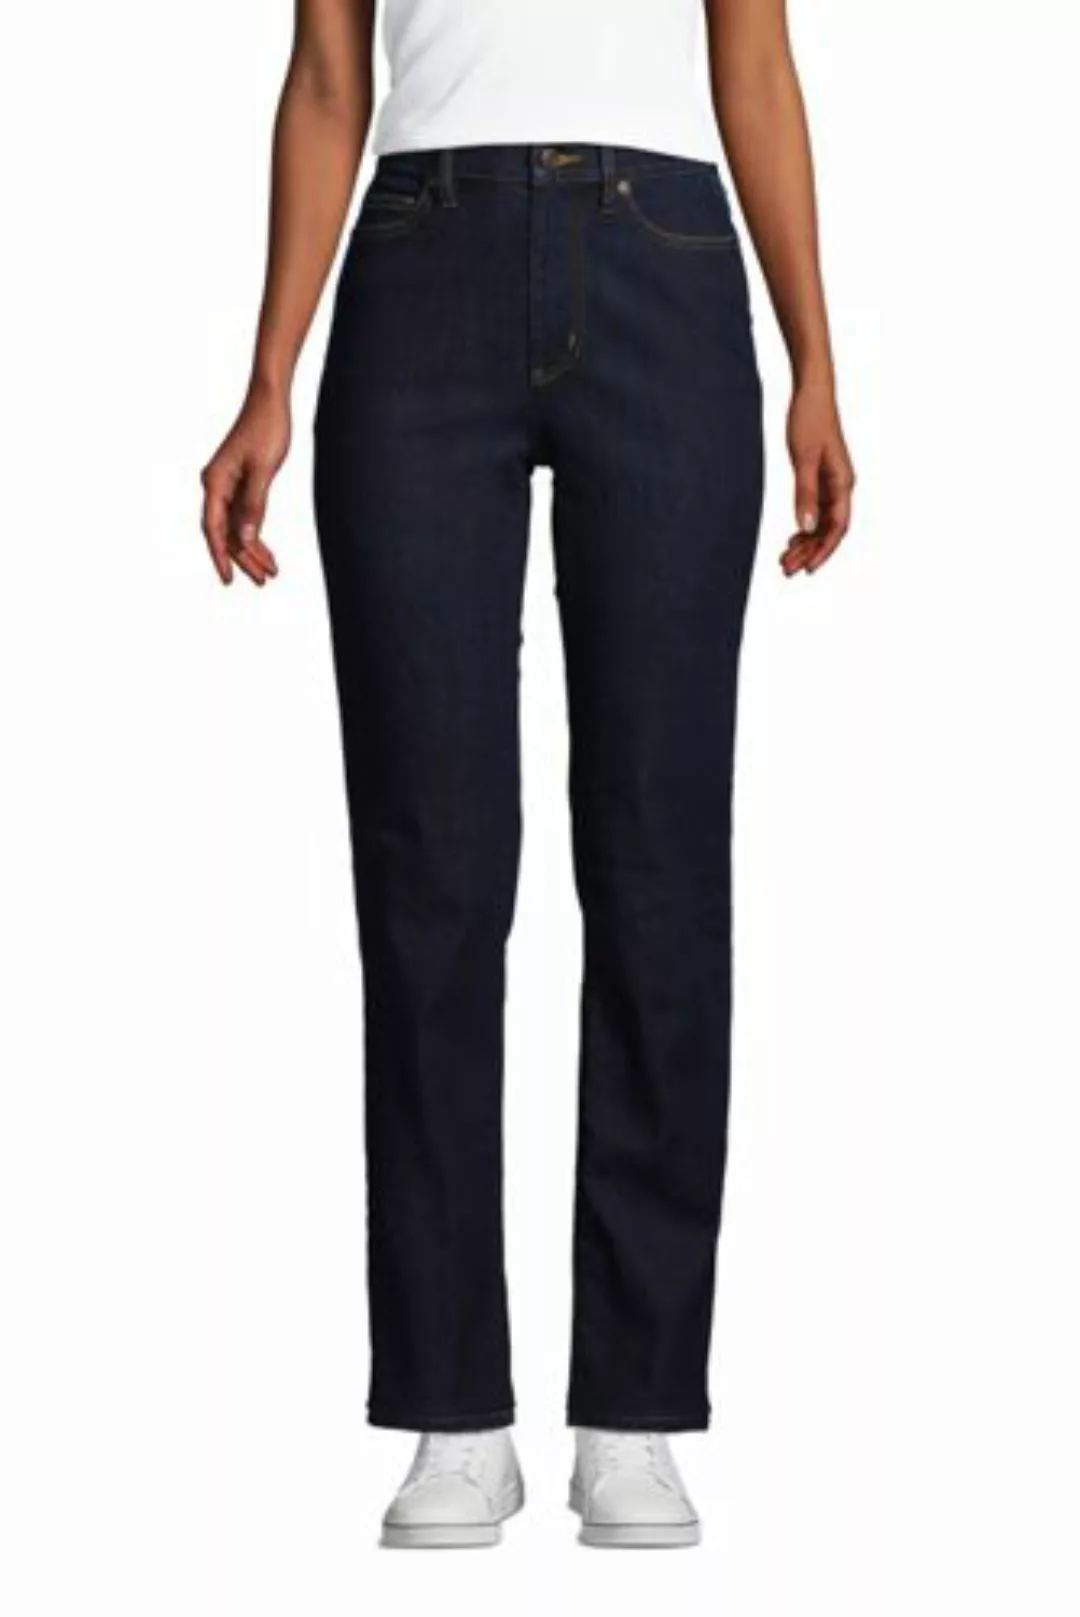 Straight Fit Öko Jeans High Waist, Damen, Größe: 42 34 Normal, Blau, Elasth günstig online kaufen